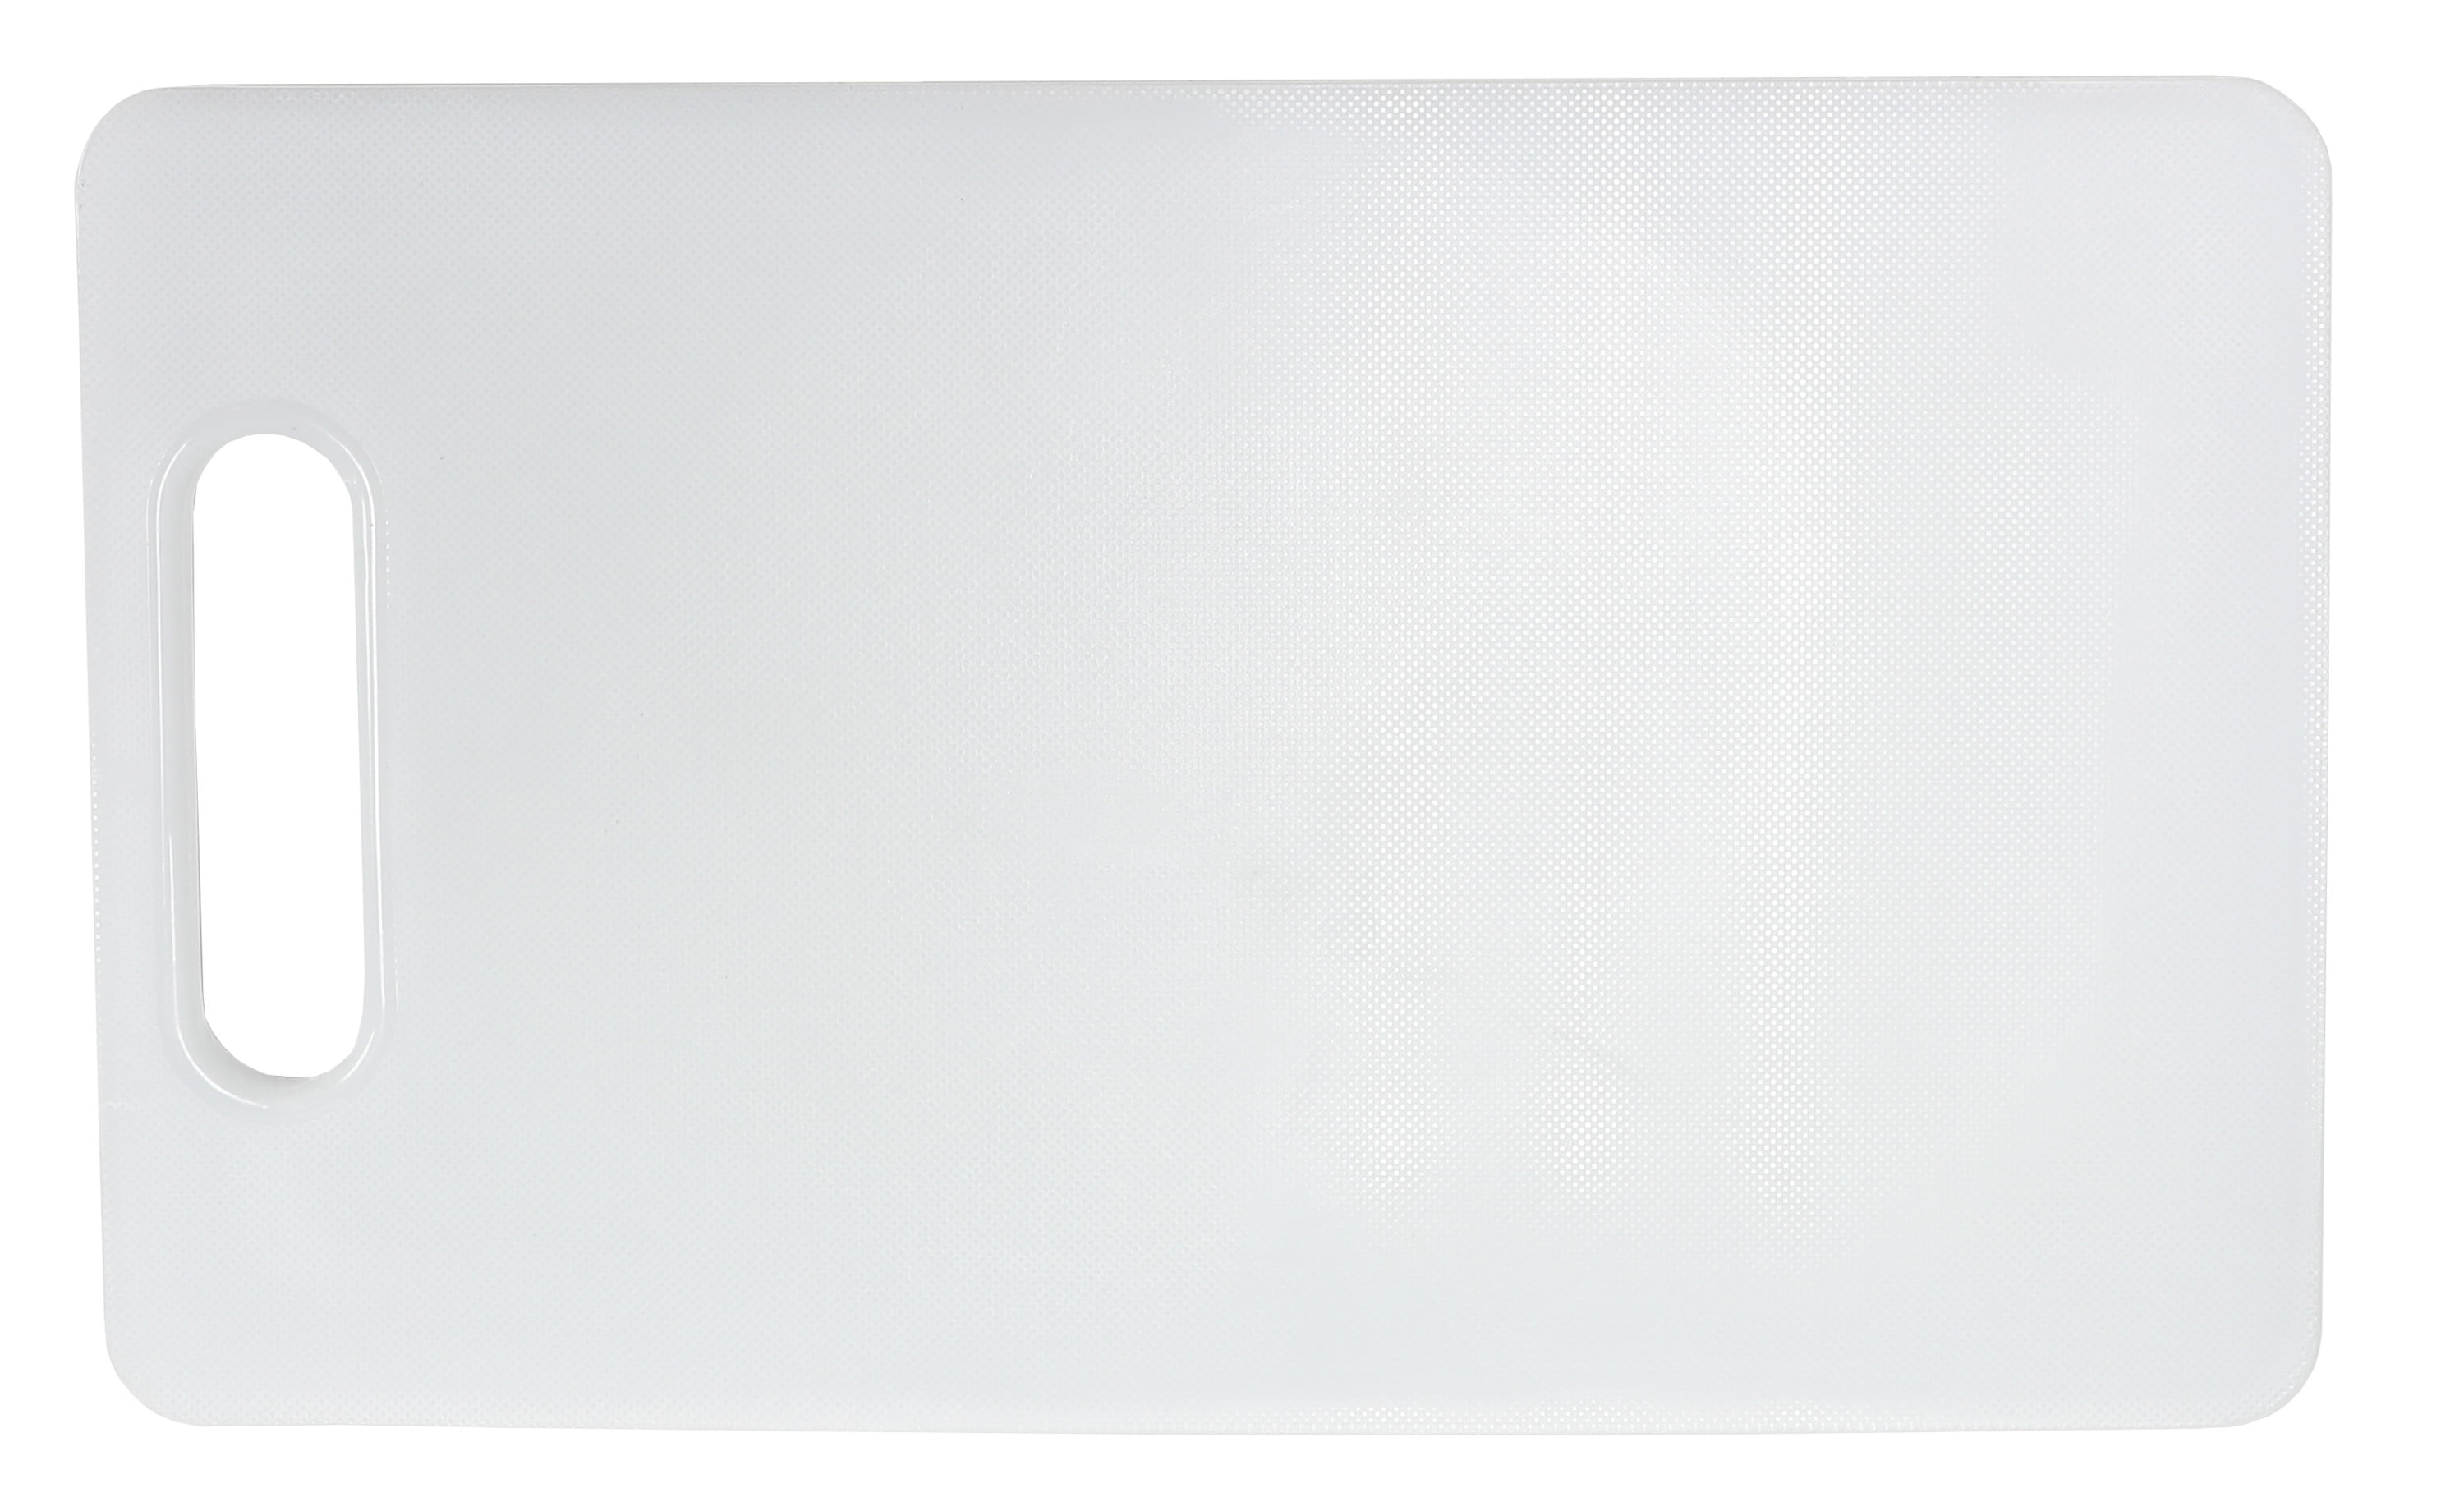 Fayer Polypropylene 18in x 13in Rectangular Cutting Board in White